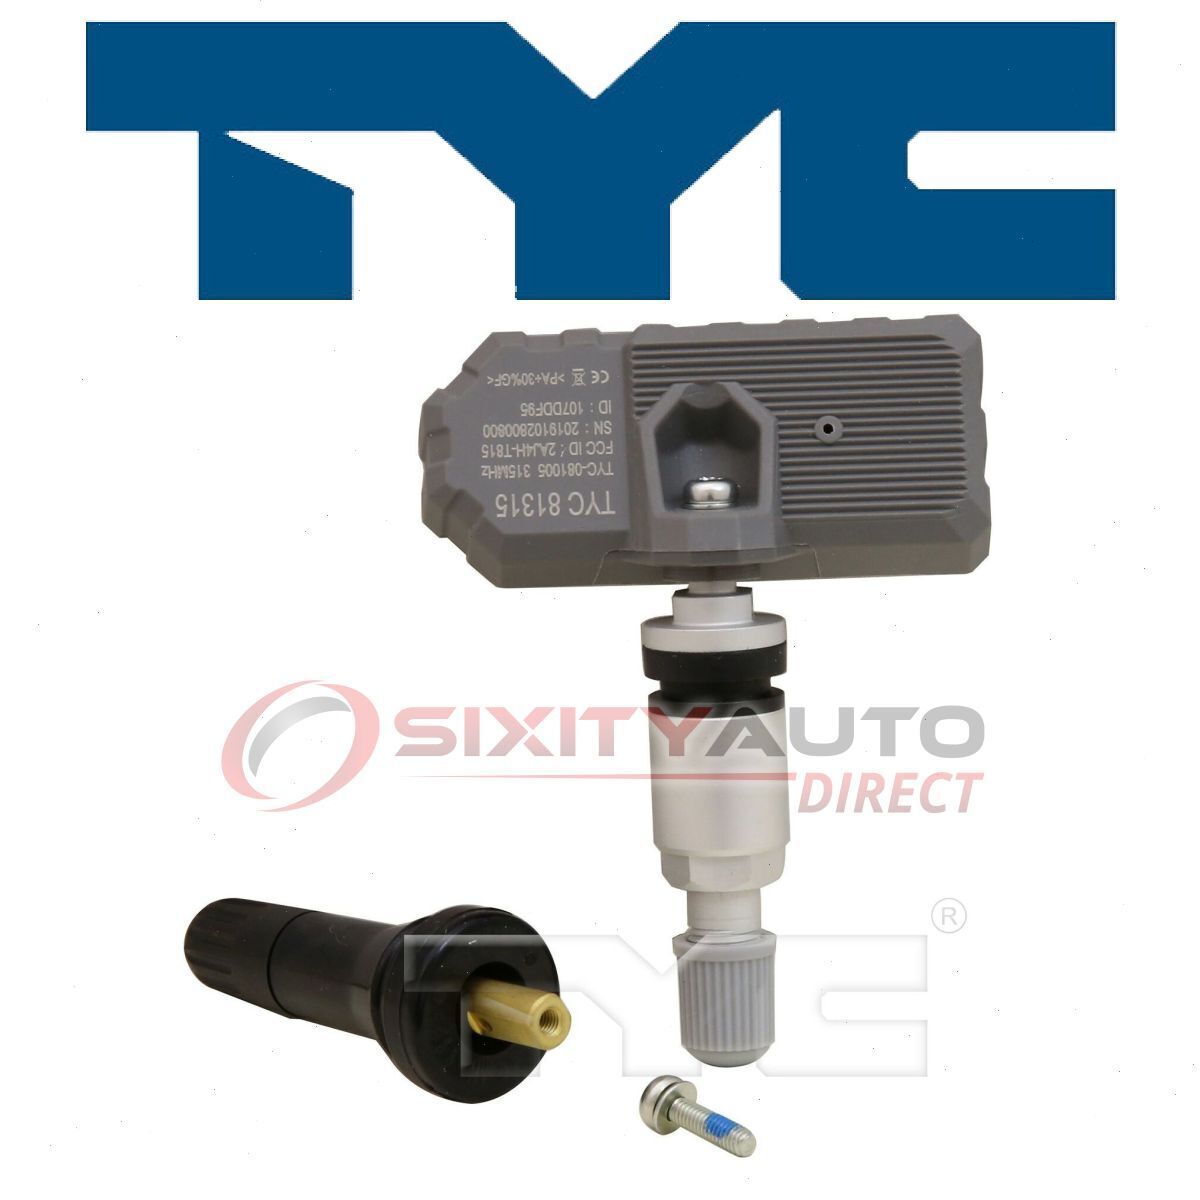 TYC TPMS Programmable Sensor for 2007-2008 Suzuki Reno Tire Pressure qv